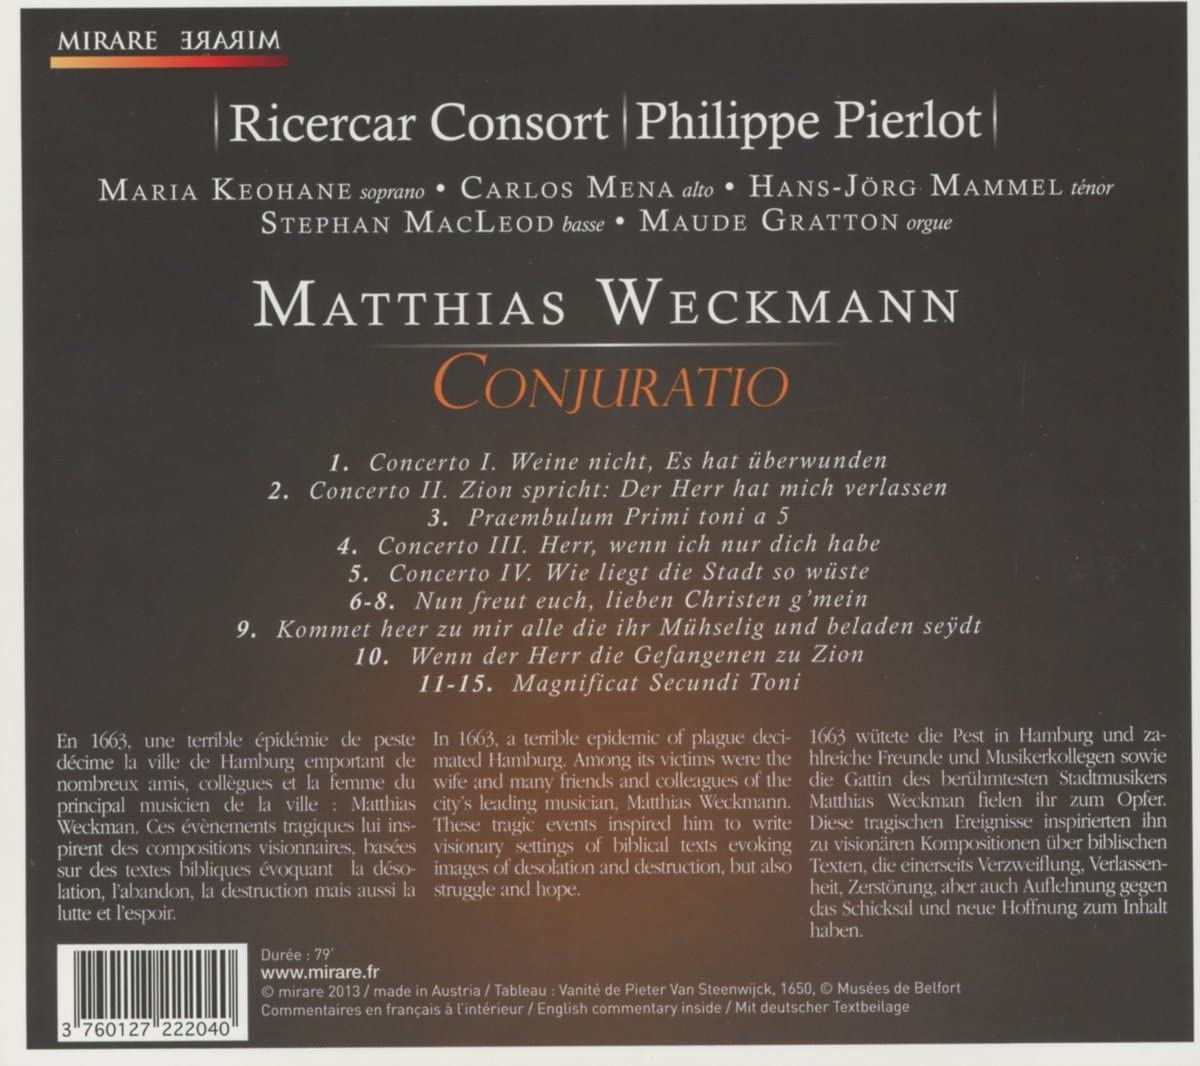 Weckmann: Conjuratio - muzyka wokalna i organowa - slide-1